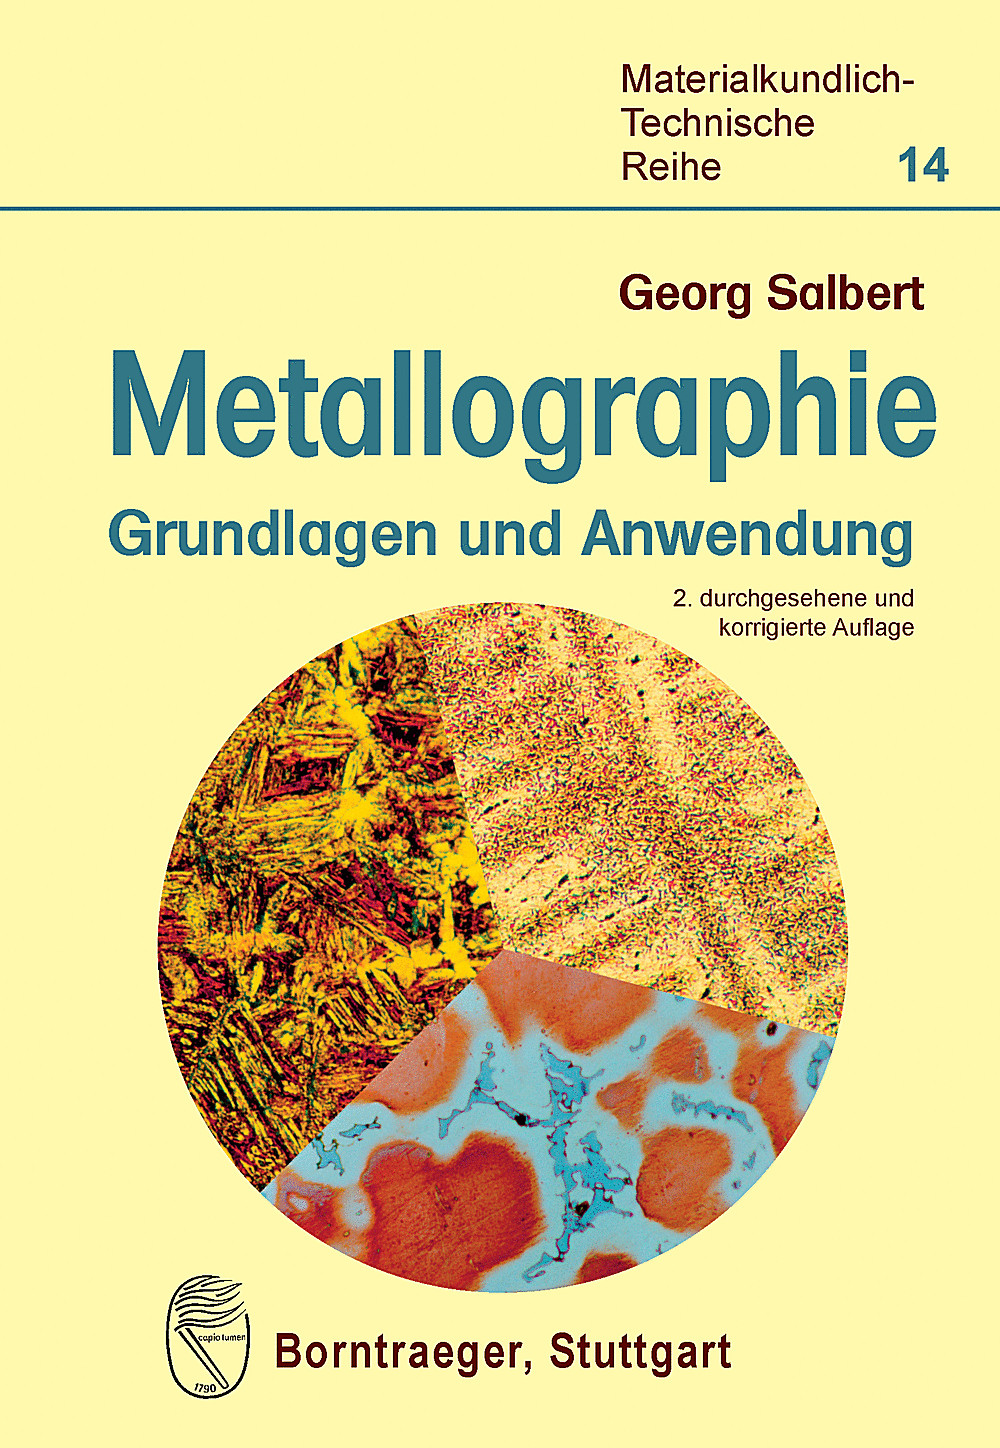 Metallographie Georg Salbert - Bild 1 von 1